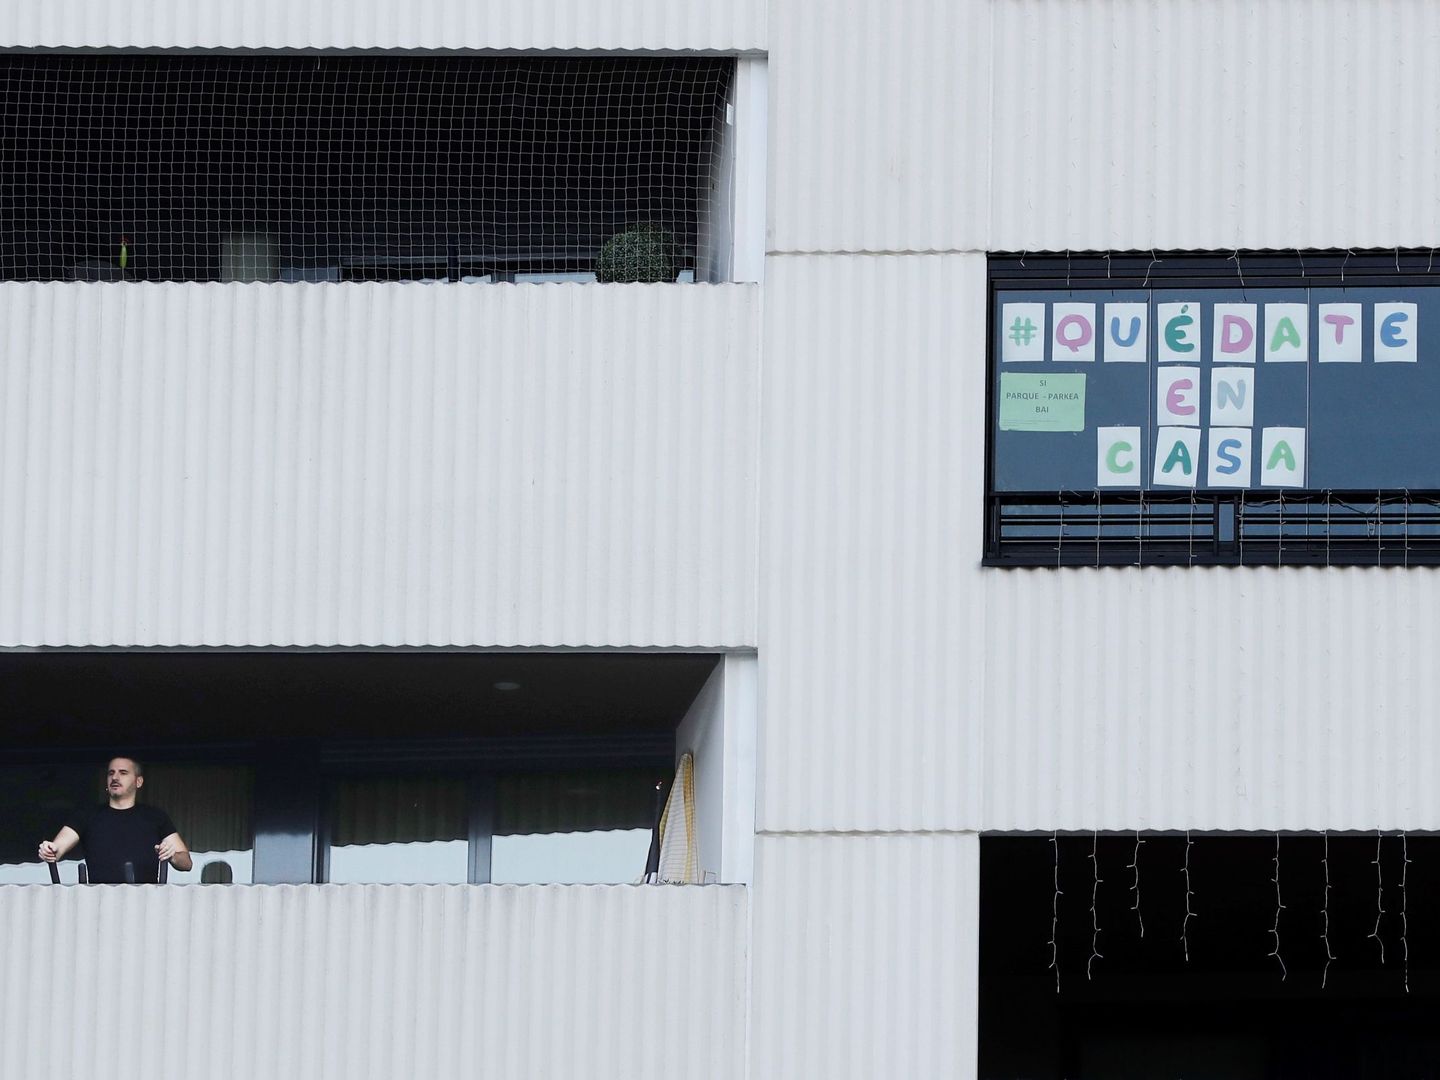 Balcones de un edificio de Pamplona, Navarra. (EFE)